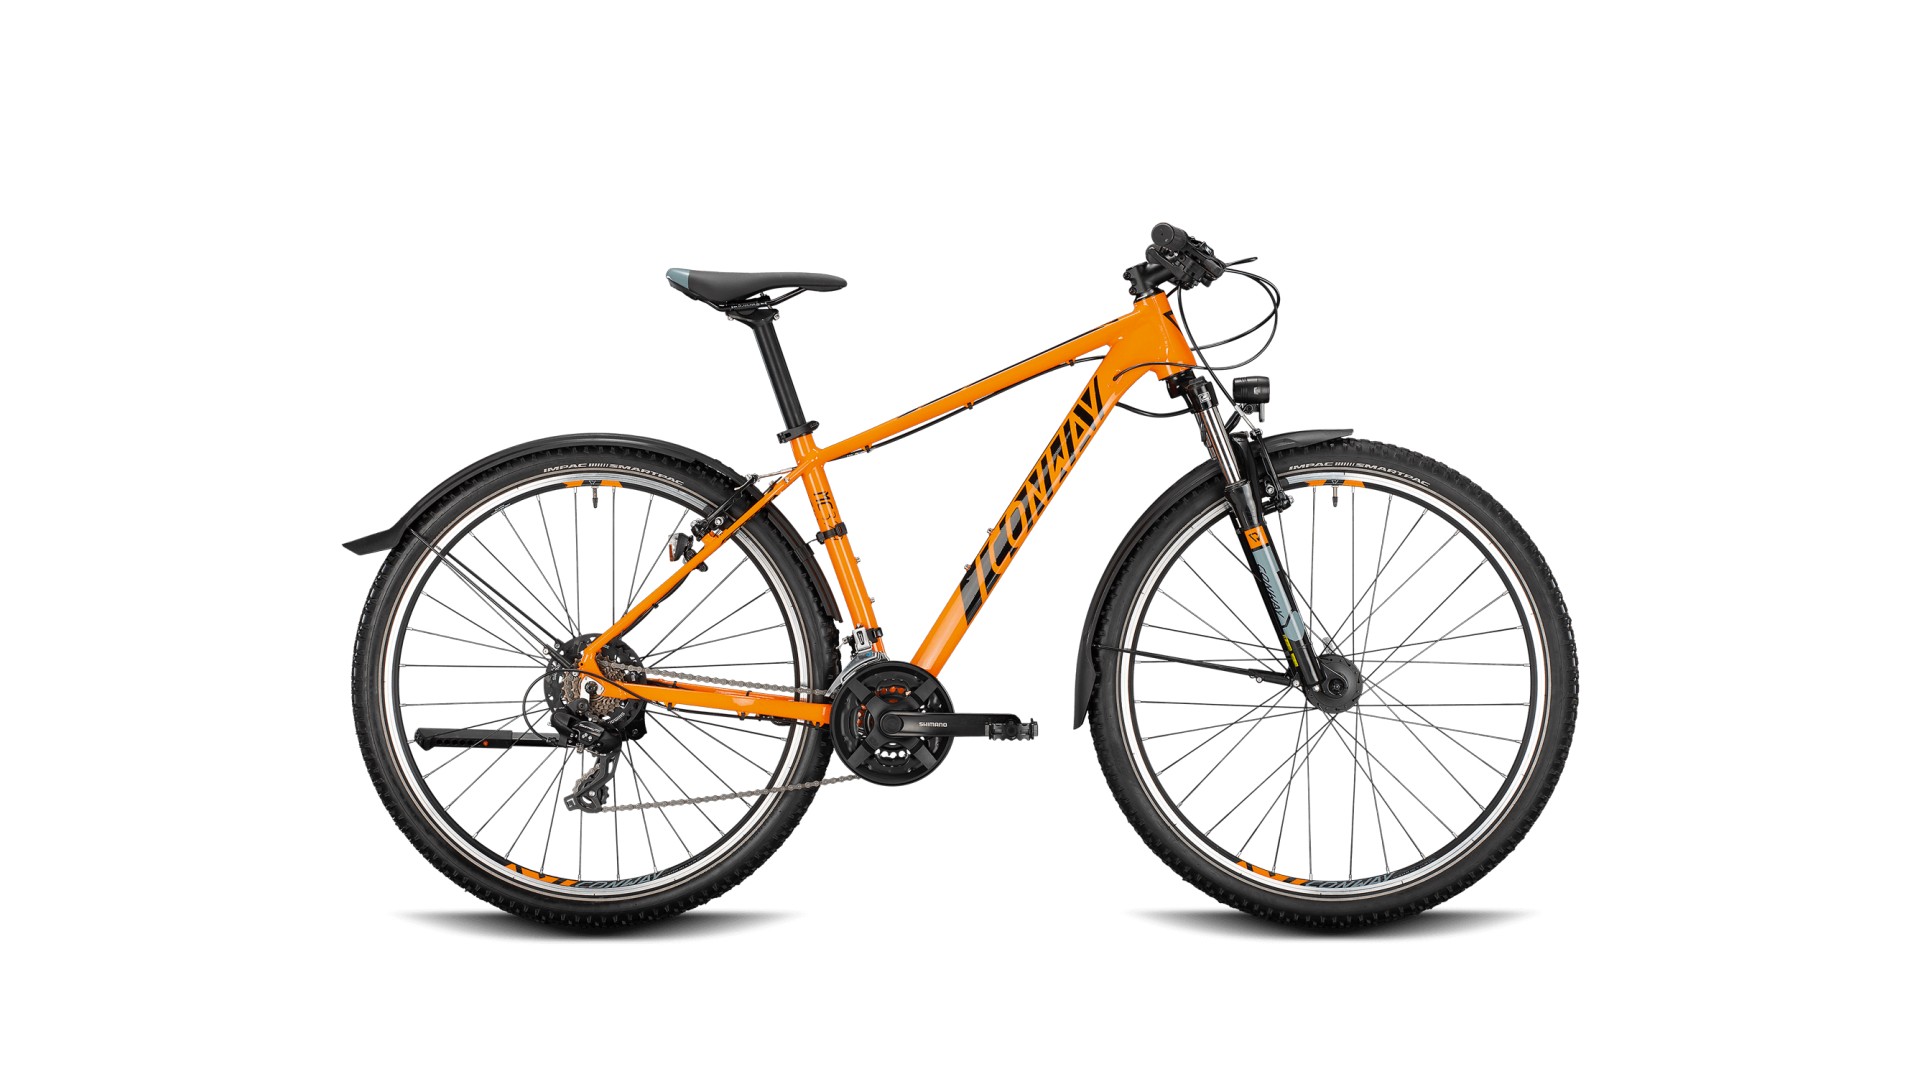 Велосипед CONWAY MC 329 оранжево/черный горный МТБ комфорт серия с динамовтулкой и крыльями